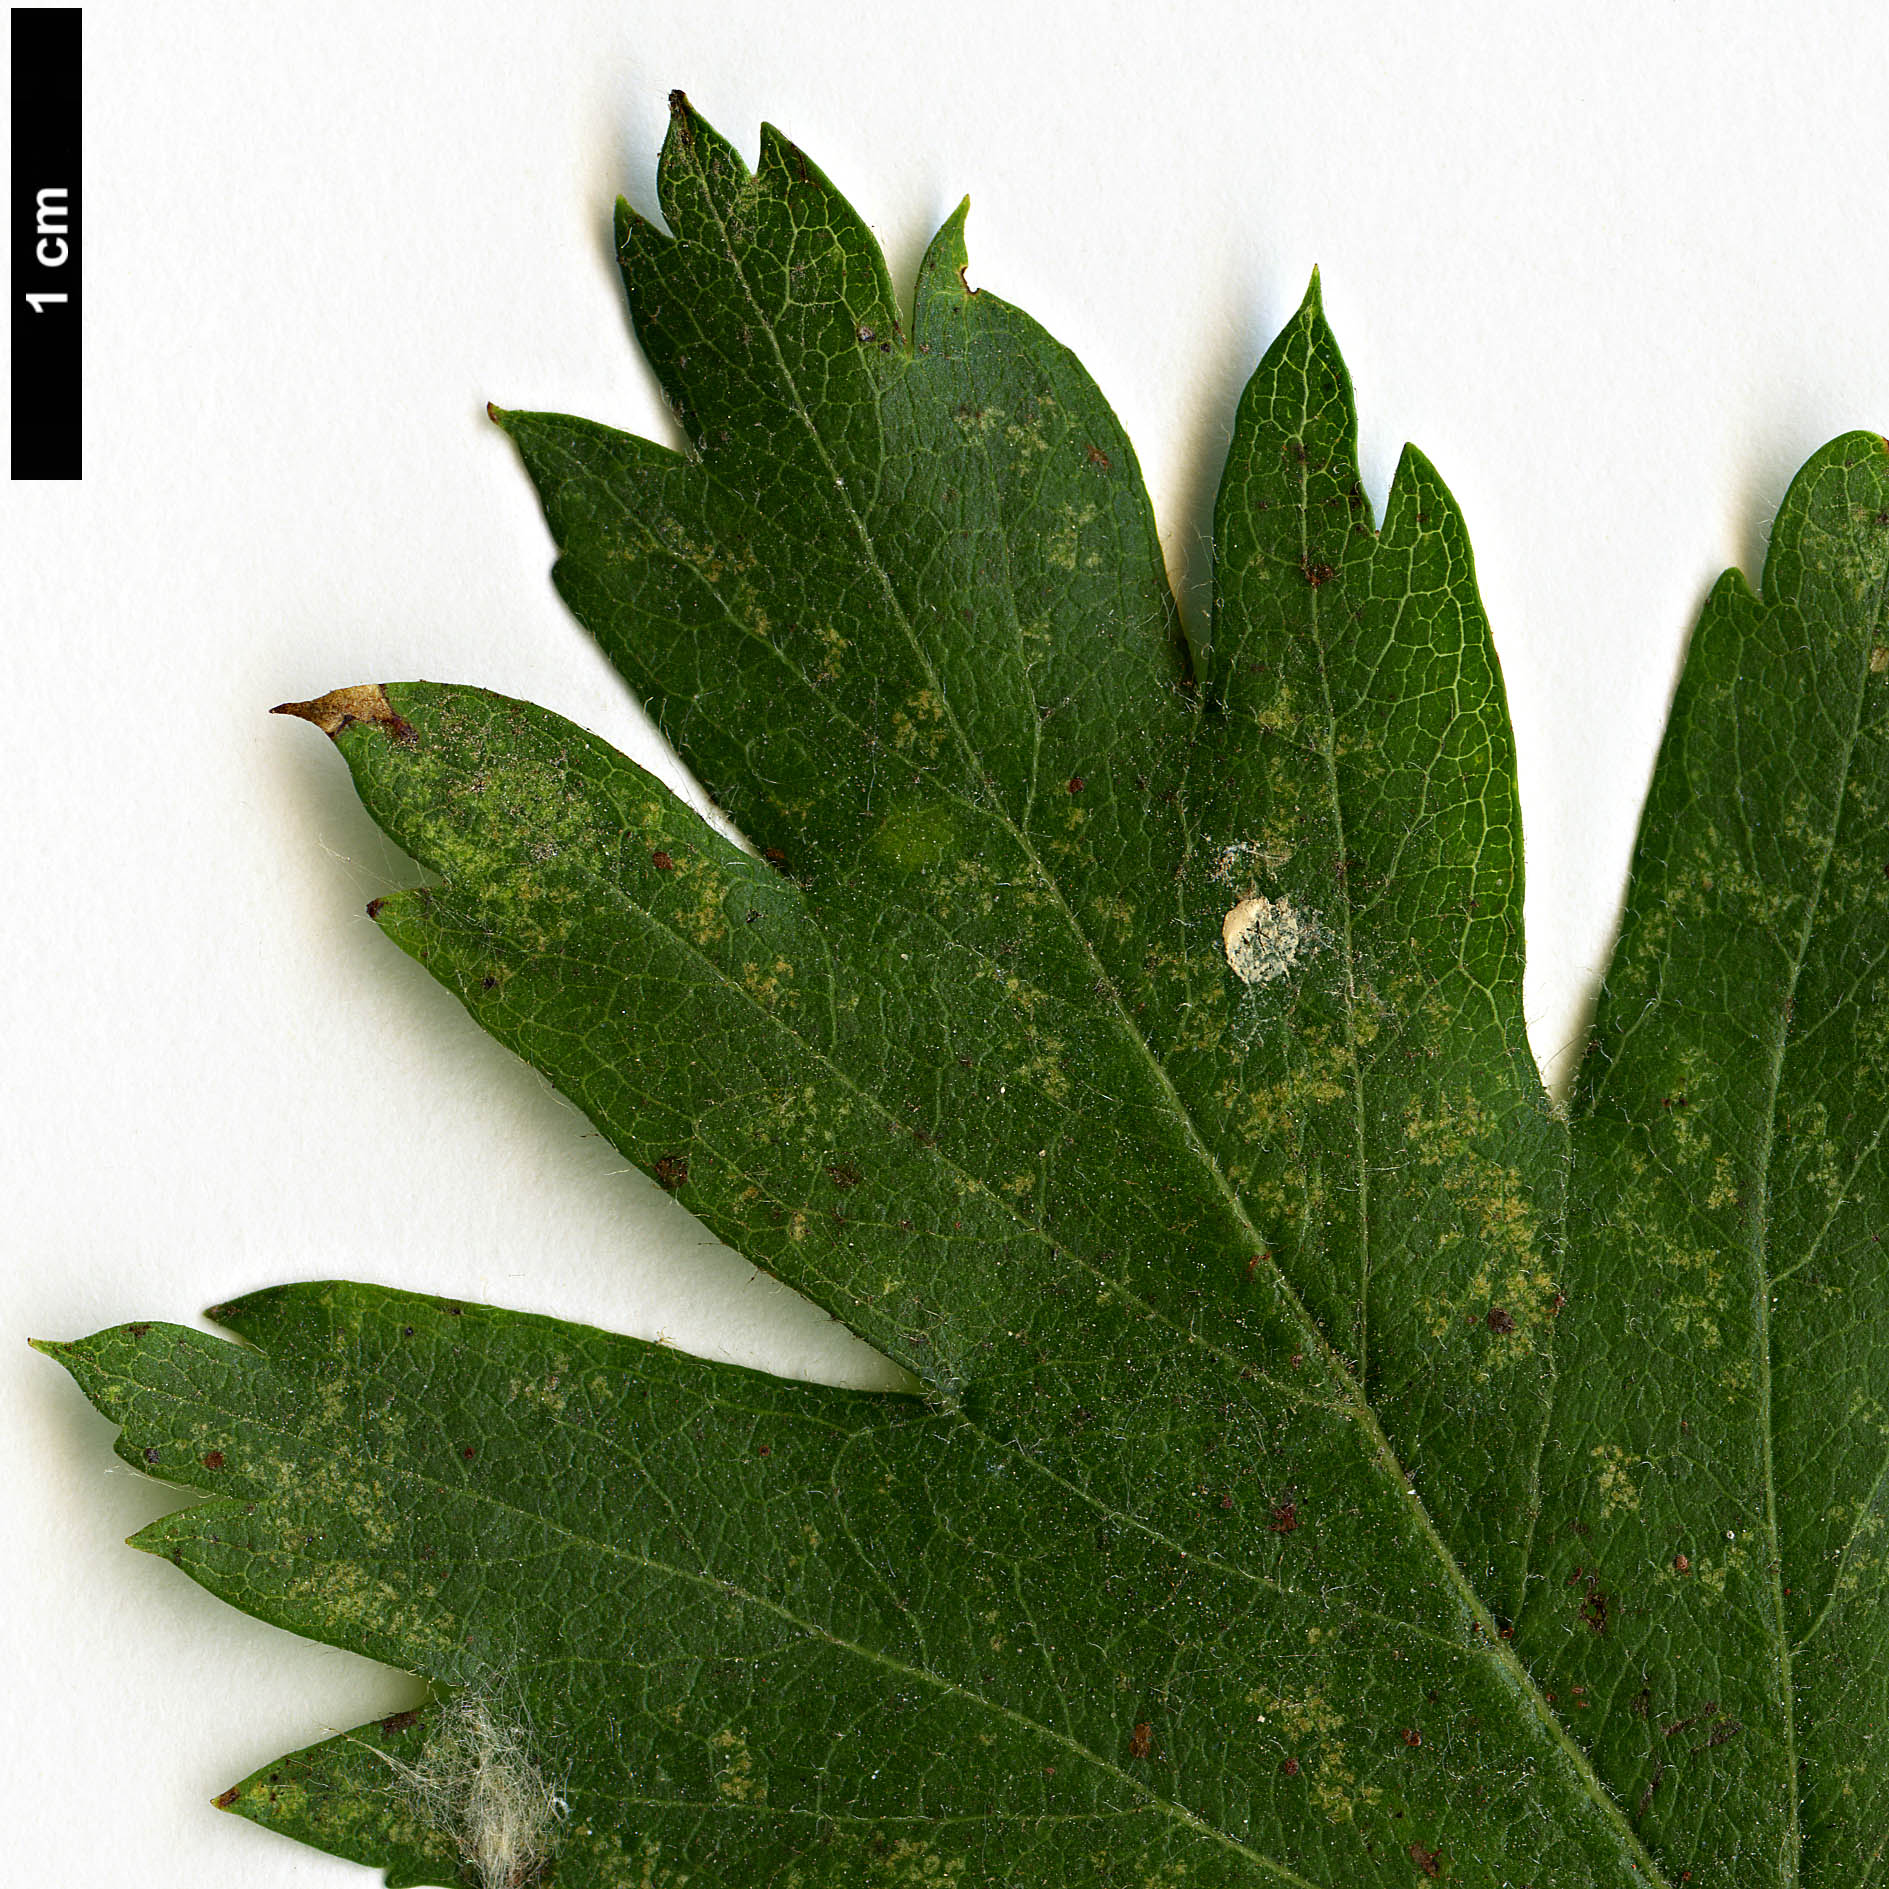 High resolution image: Family: Rosaceae - Genus: Crataegus - Taxon: ×dsungarica (C.altaica × C.songorica)